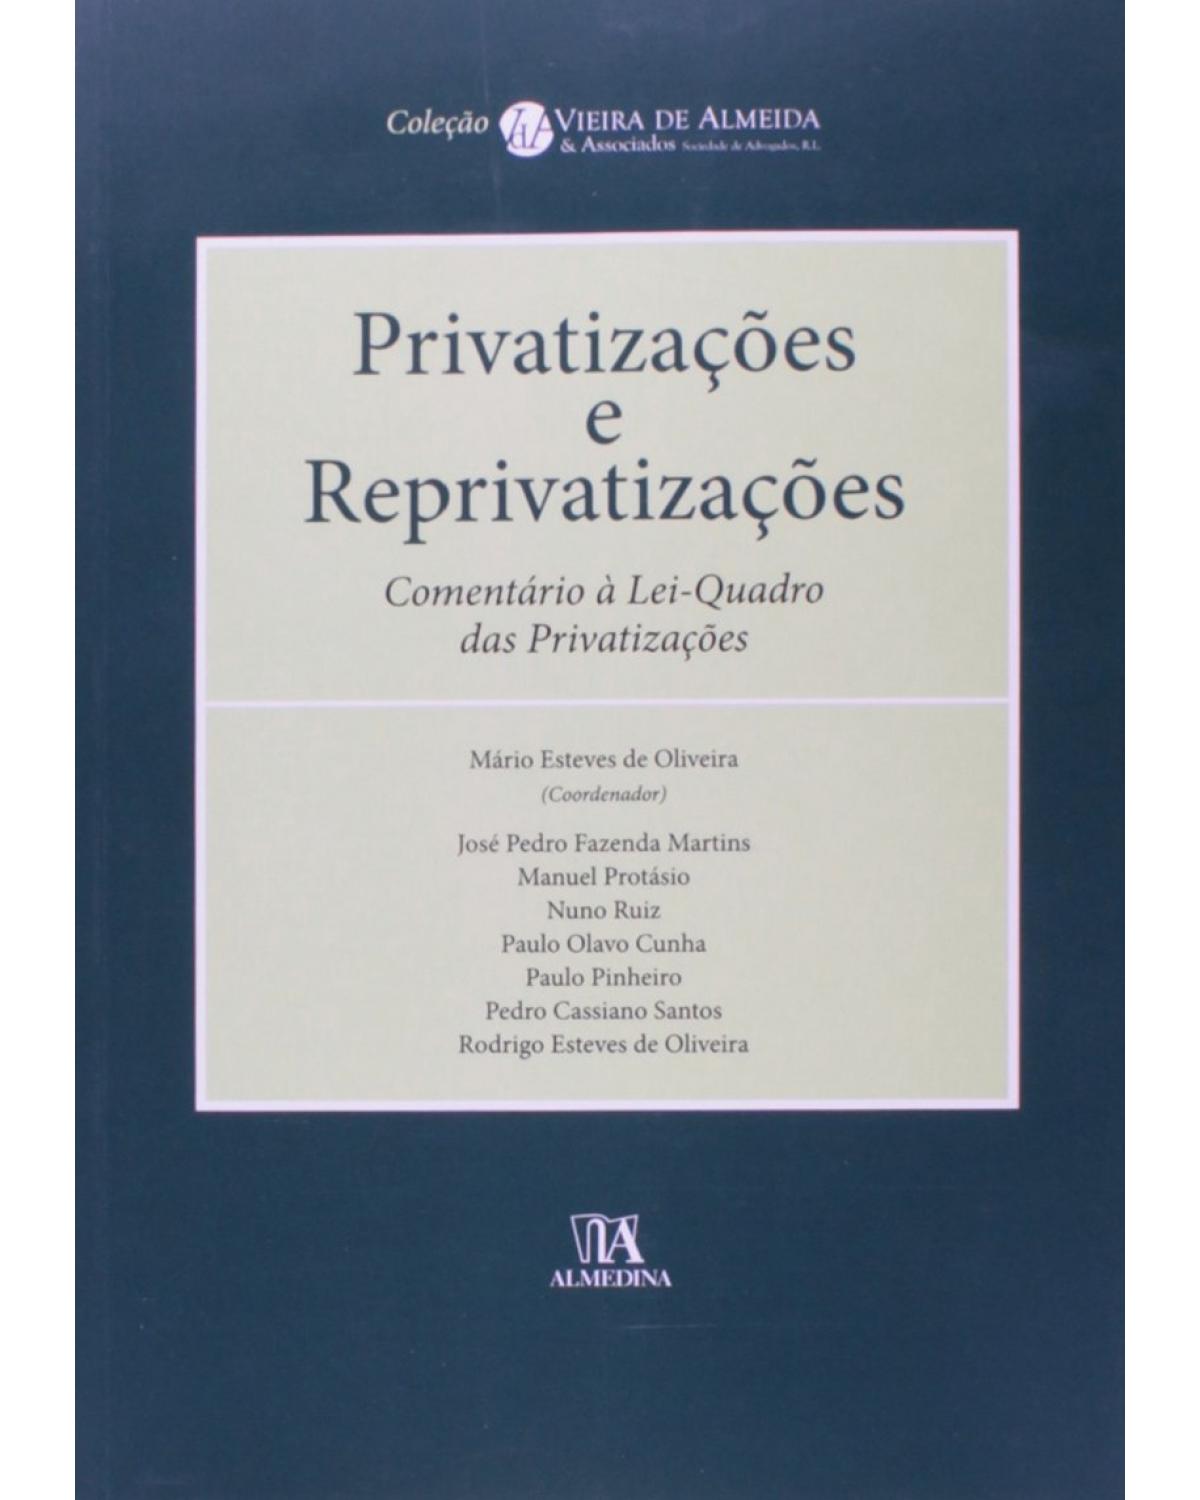 Privatizações e reprivatizações - comentário à lei-quadro das privatizações - 1ª Edição | 2011